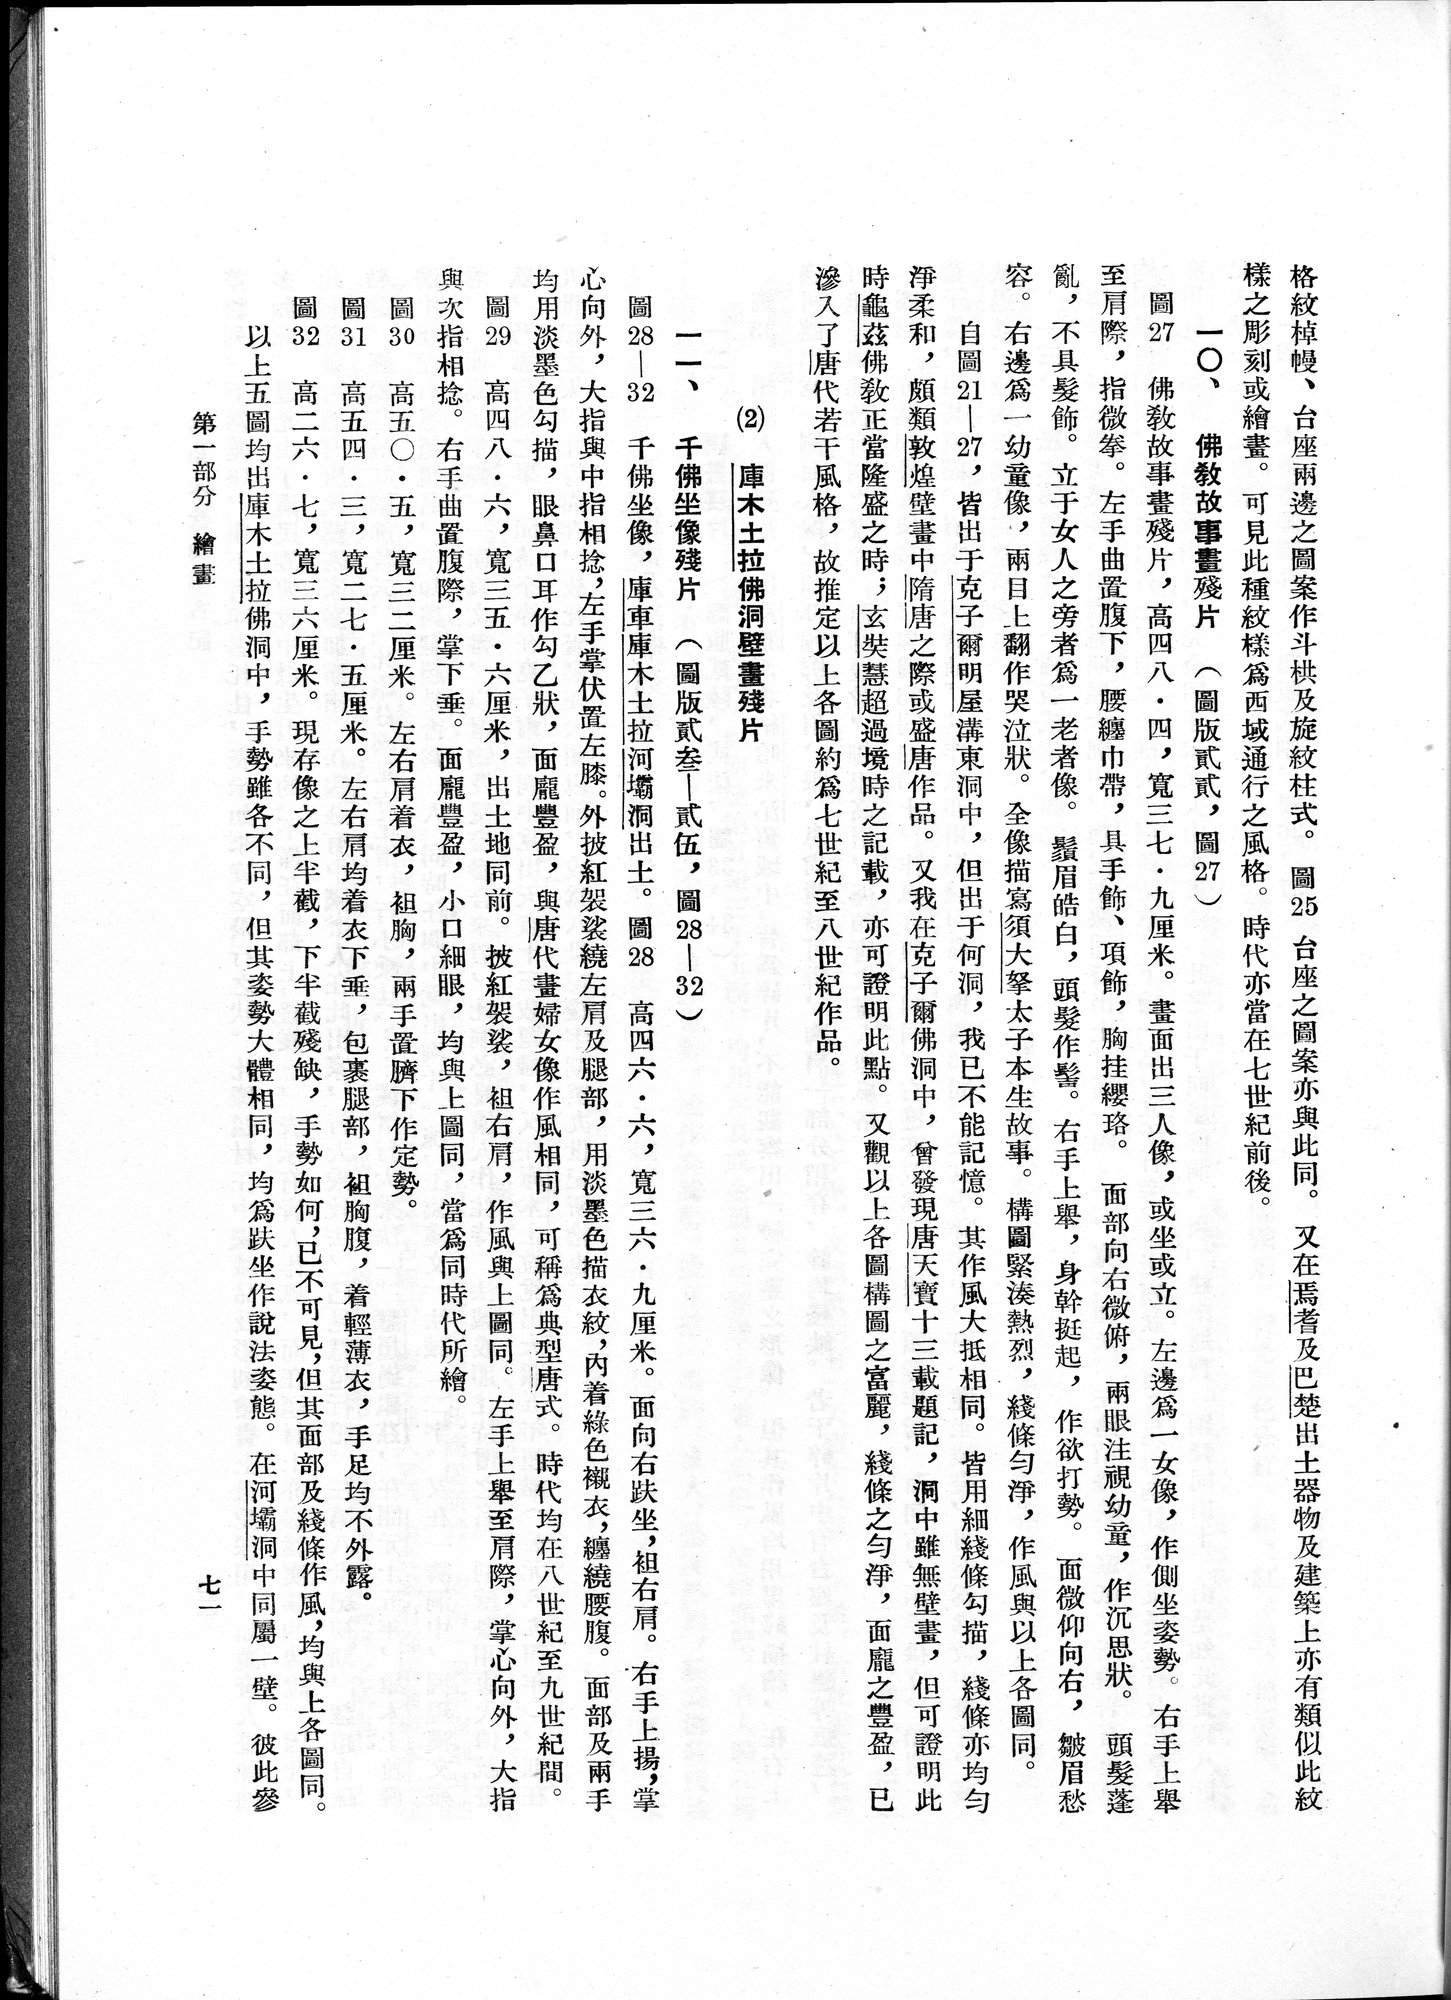 塔里木盆地考古記 : vol.1 / Page 135 (Grayscale High Resolution Image)